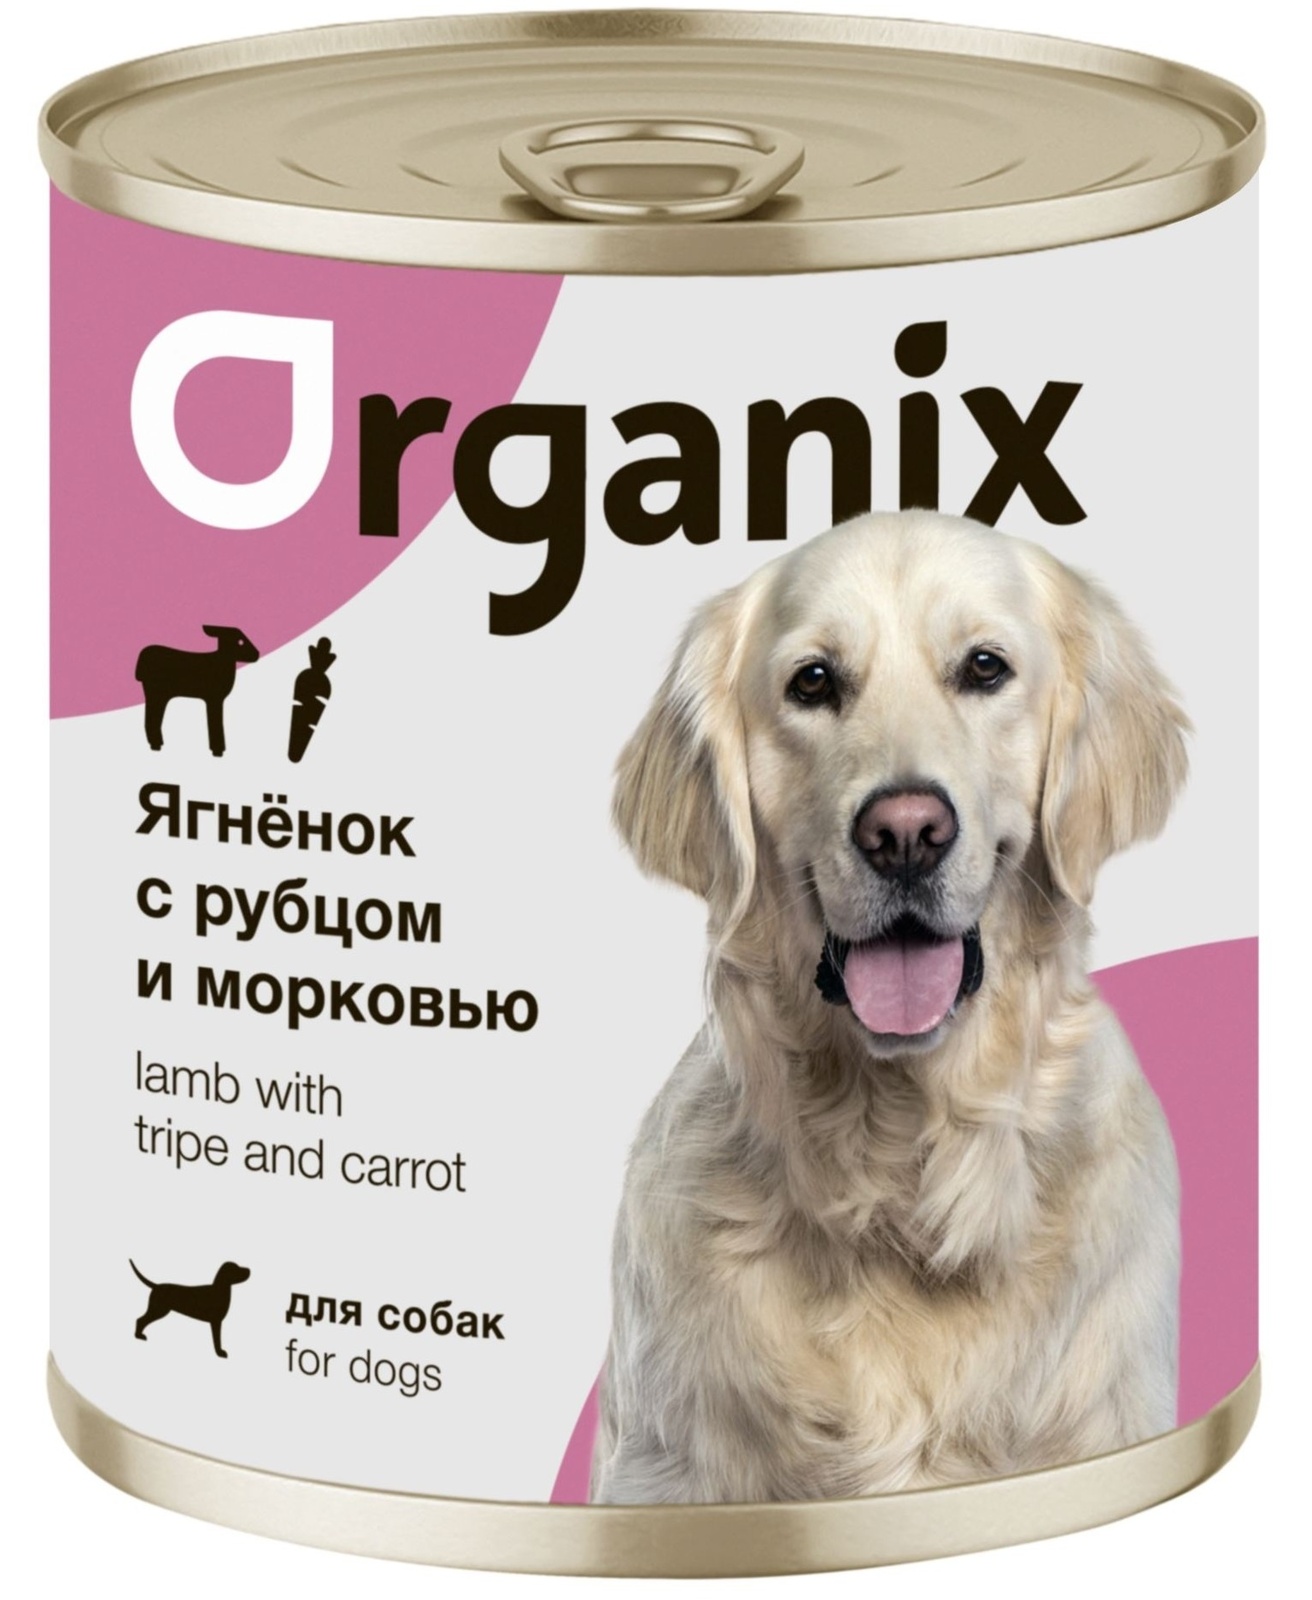 Organix консервы Organix консервы для собак Ягненок с рубцом и морковью (400 г) organix консервы organix консервы для собак заливное из говядины с черникой 400 г